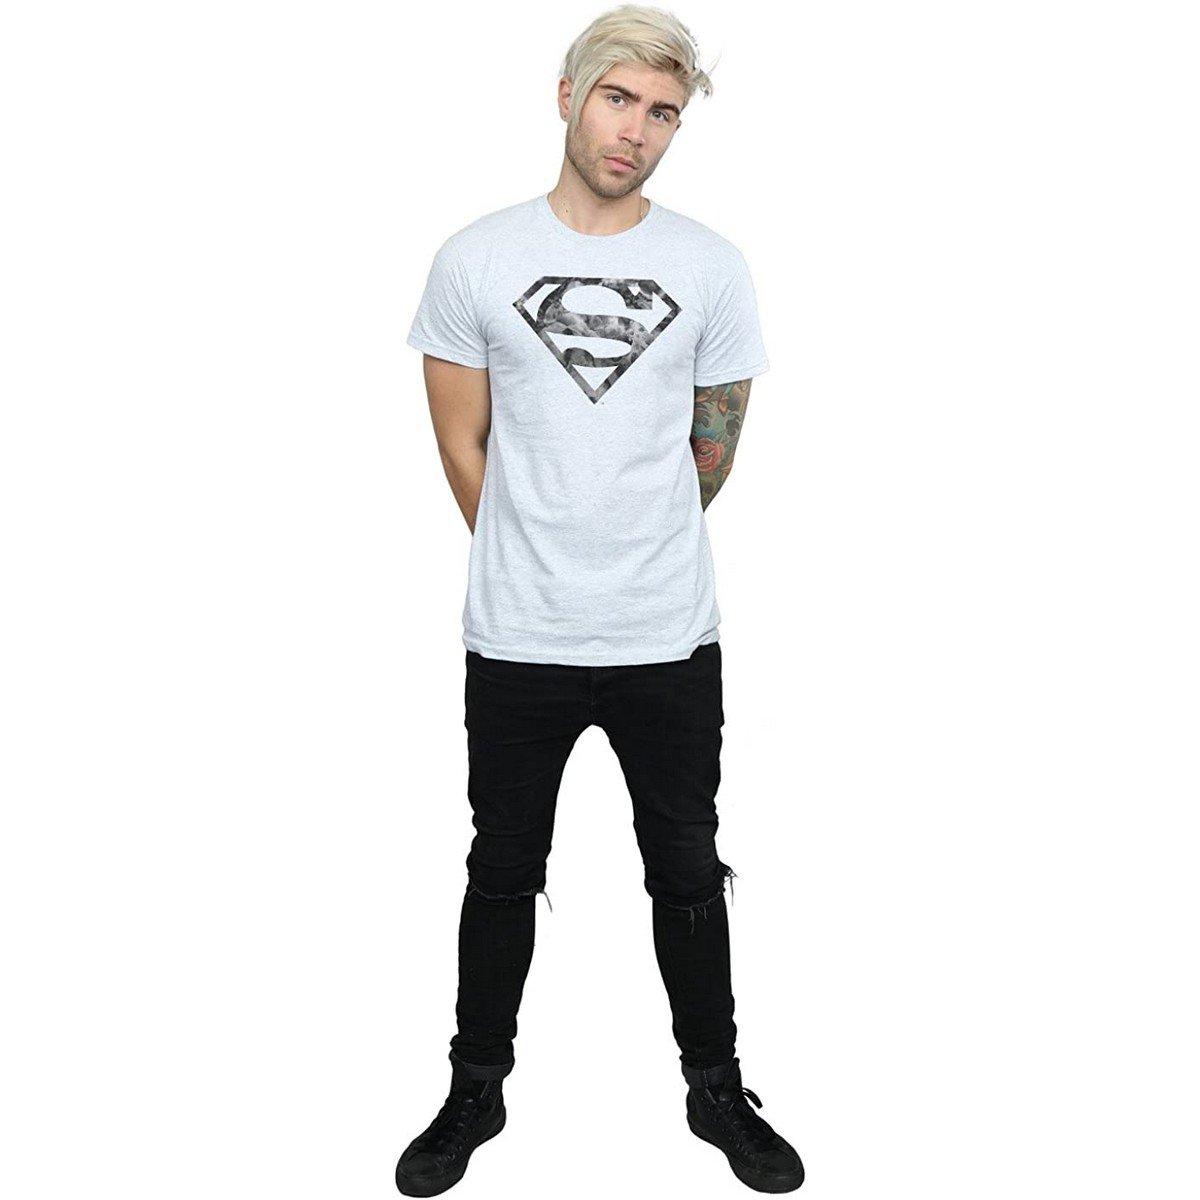 SUPERMAN  Tshirt 